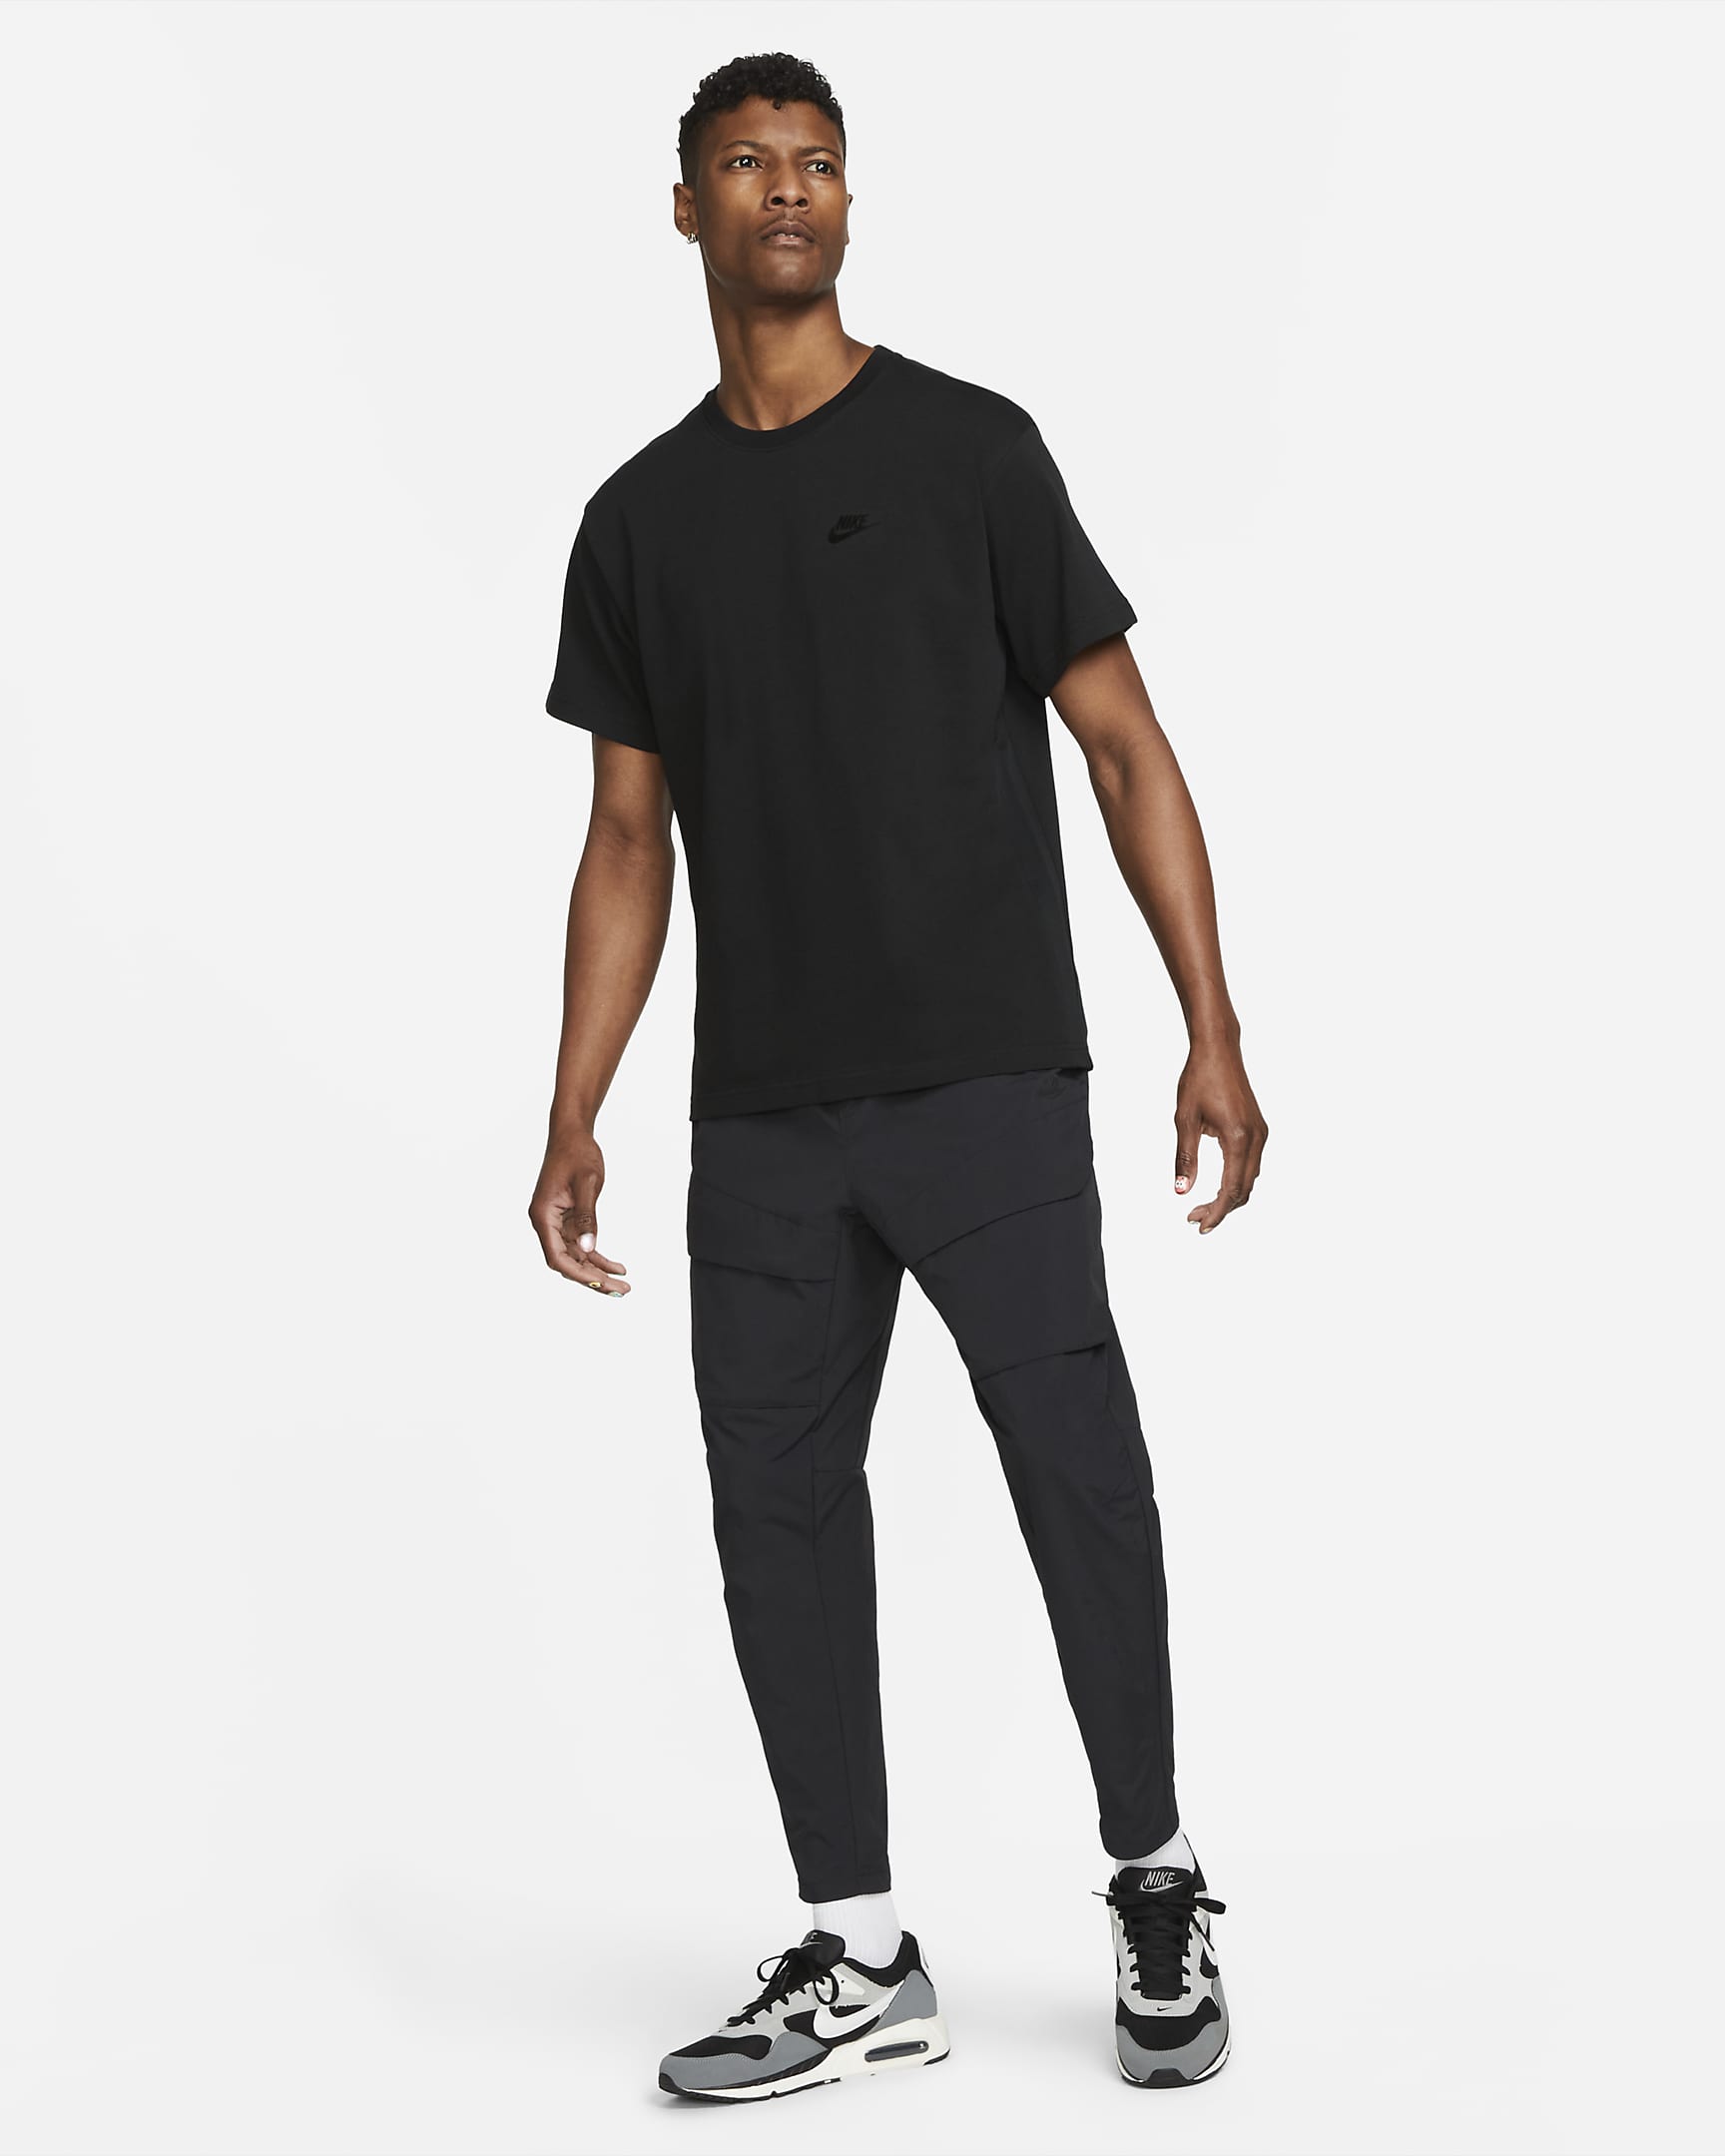 Nike Sportswear Men's Lightweight Knit Short-Sleeve Top. Nike CA